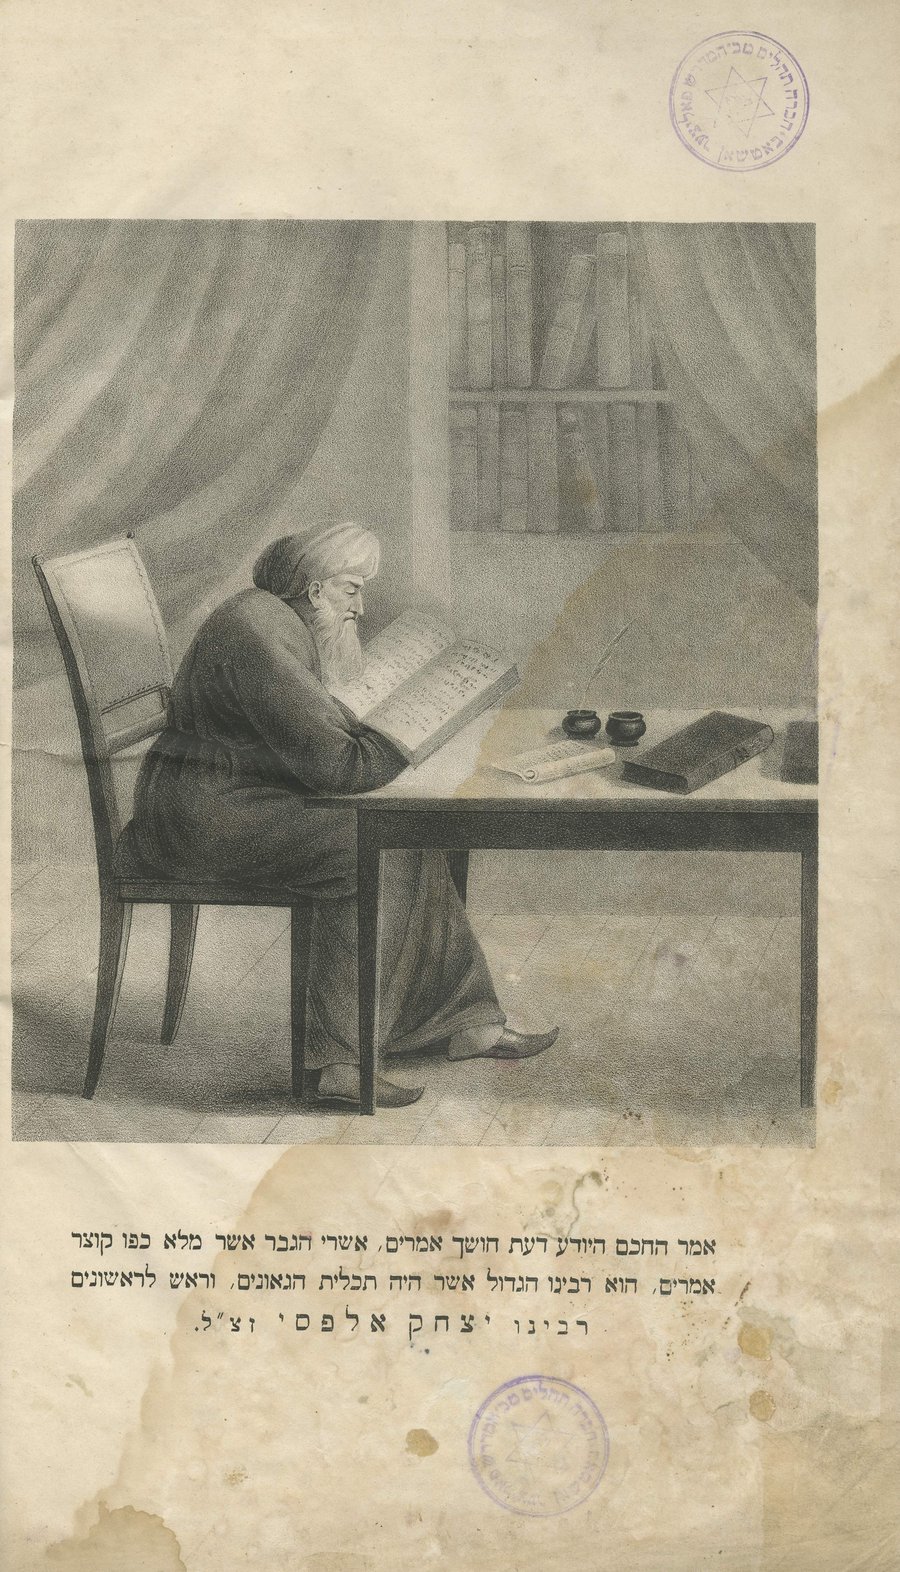 ספר 'הלכות רב אלפס', על מסכת ברכות פרעסבורג, תקצ"ו 1836